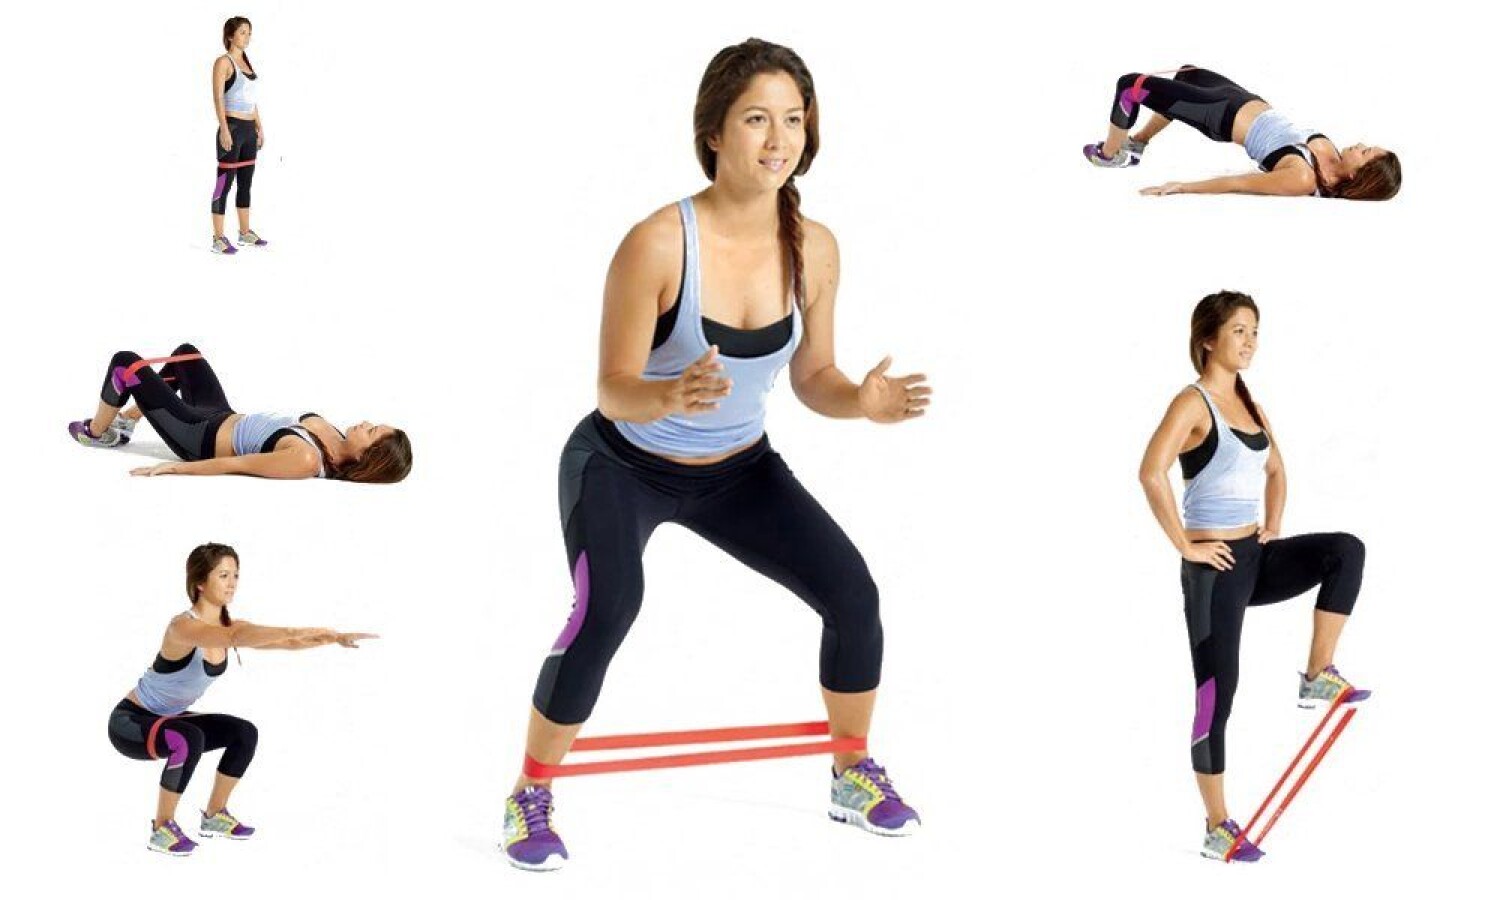 5 X Bandas de Resistencia Elásticas Fitness Gomas Musculación Yoga Gym  Hogar Kit